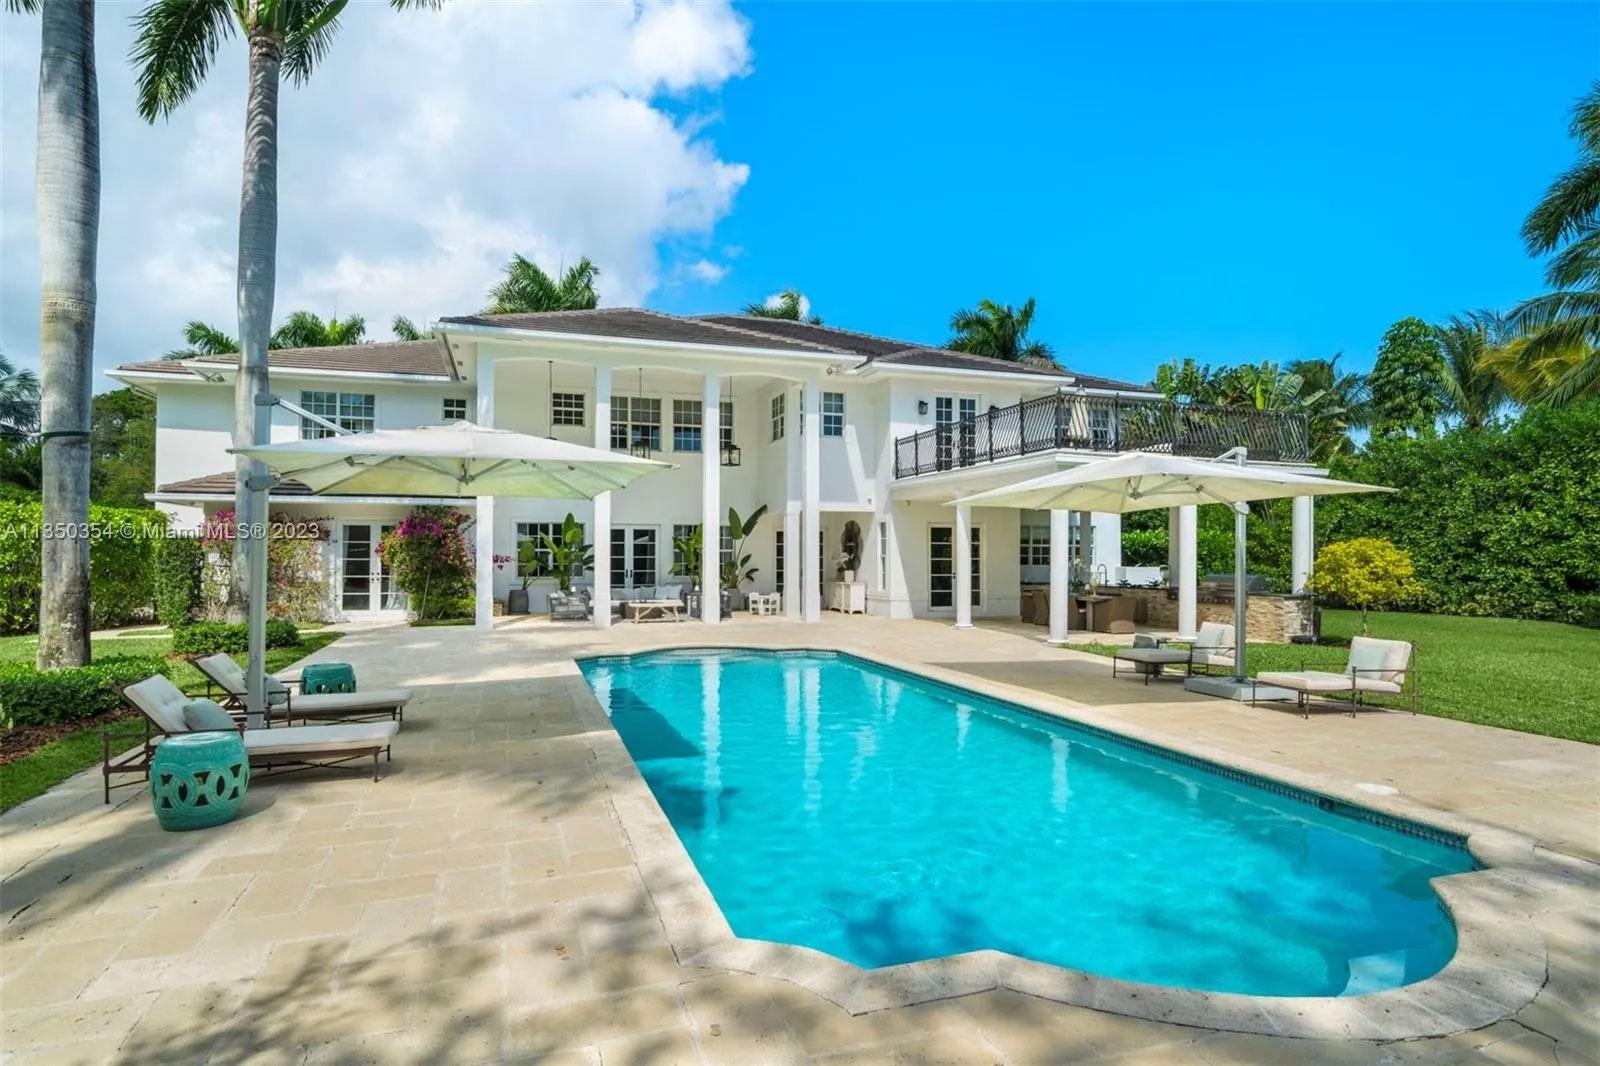 La familia vende la villa en Florida.